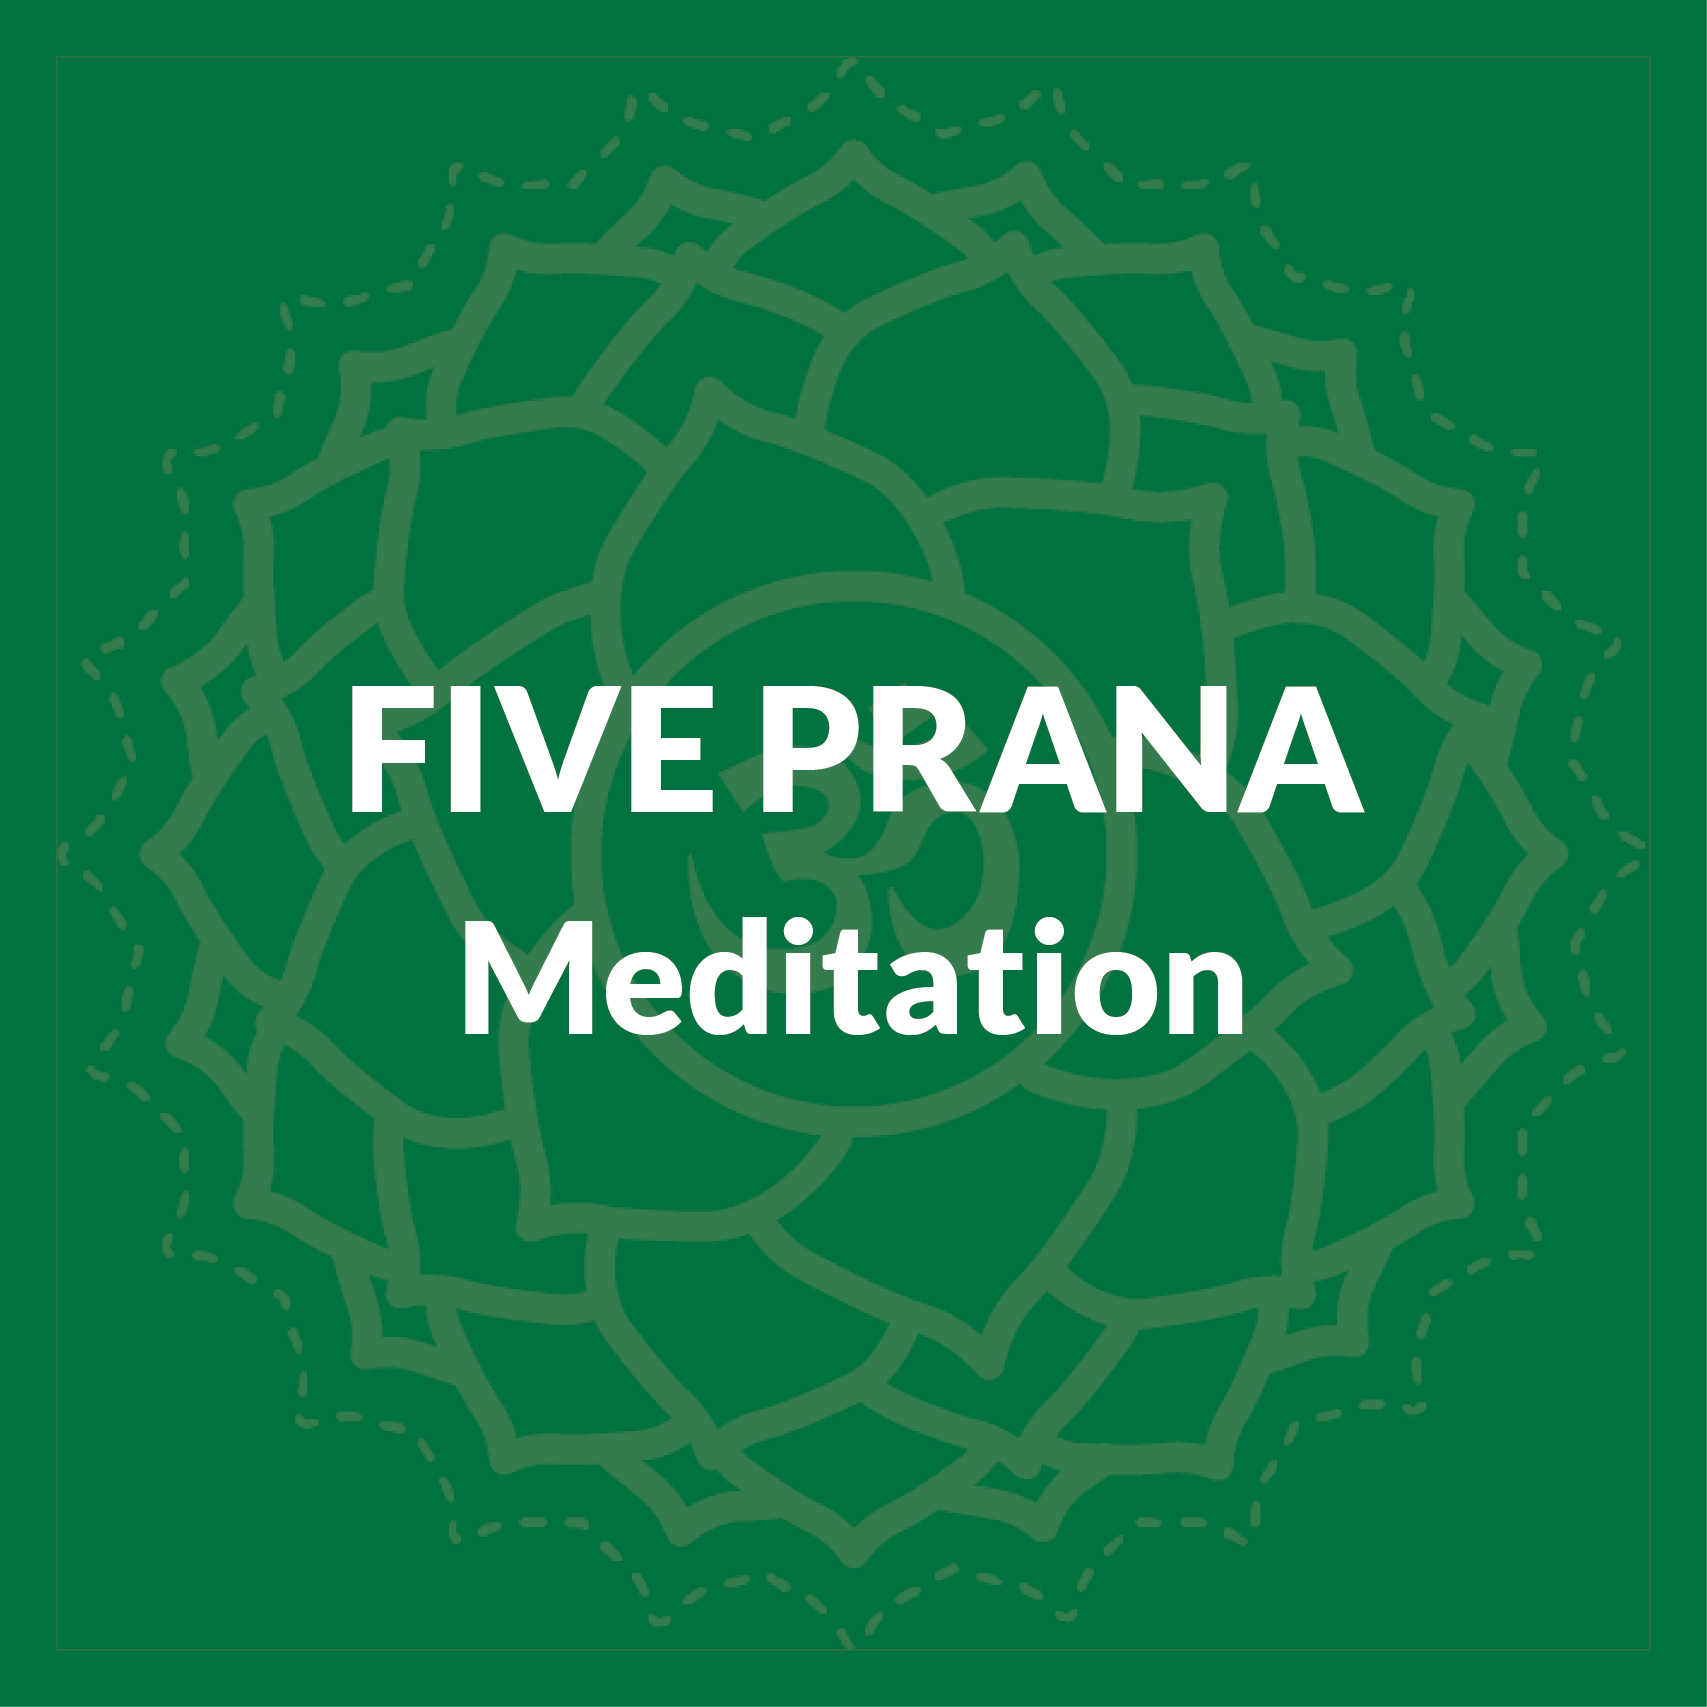 Five Prana Meditation